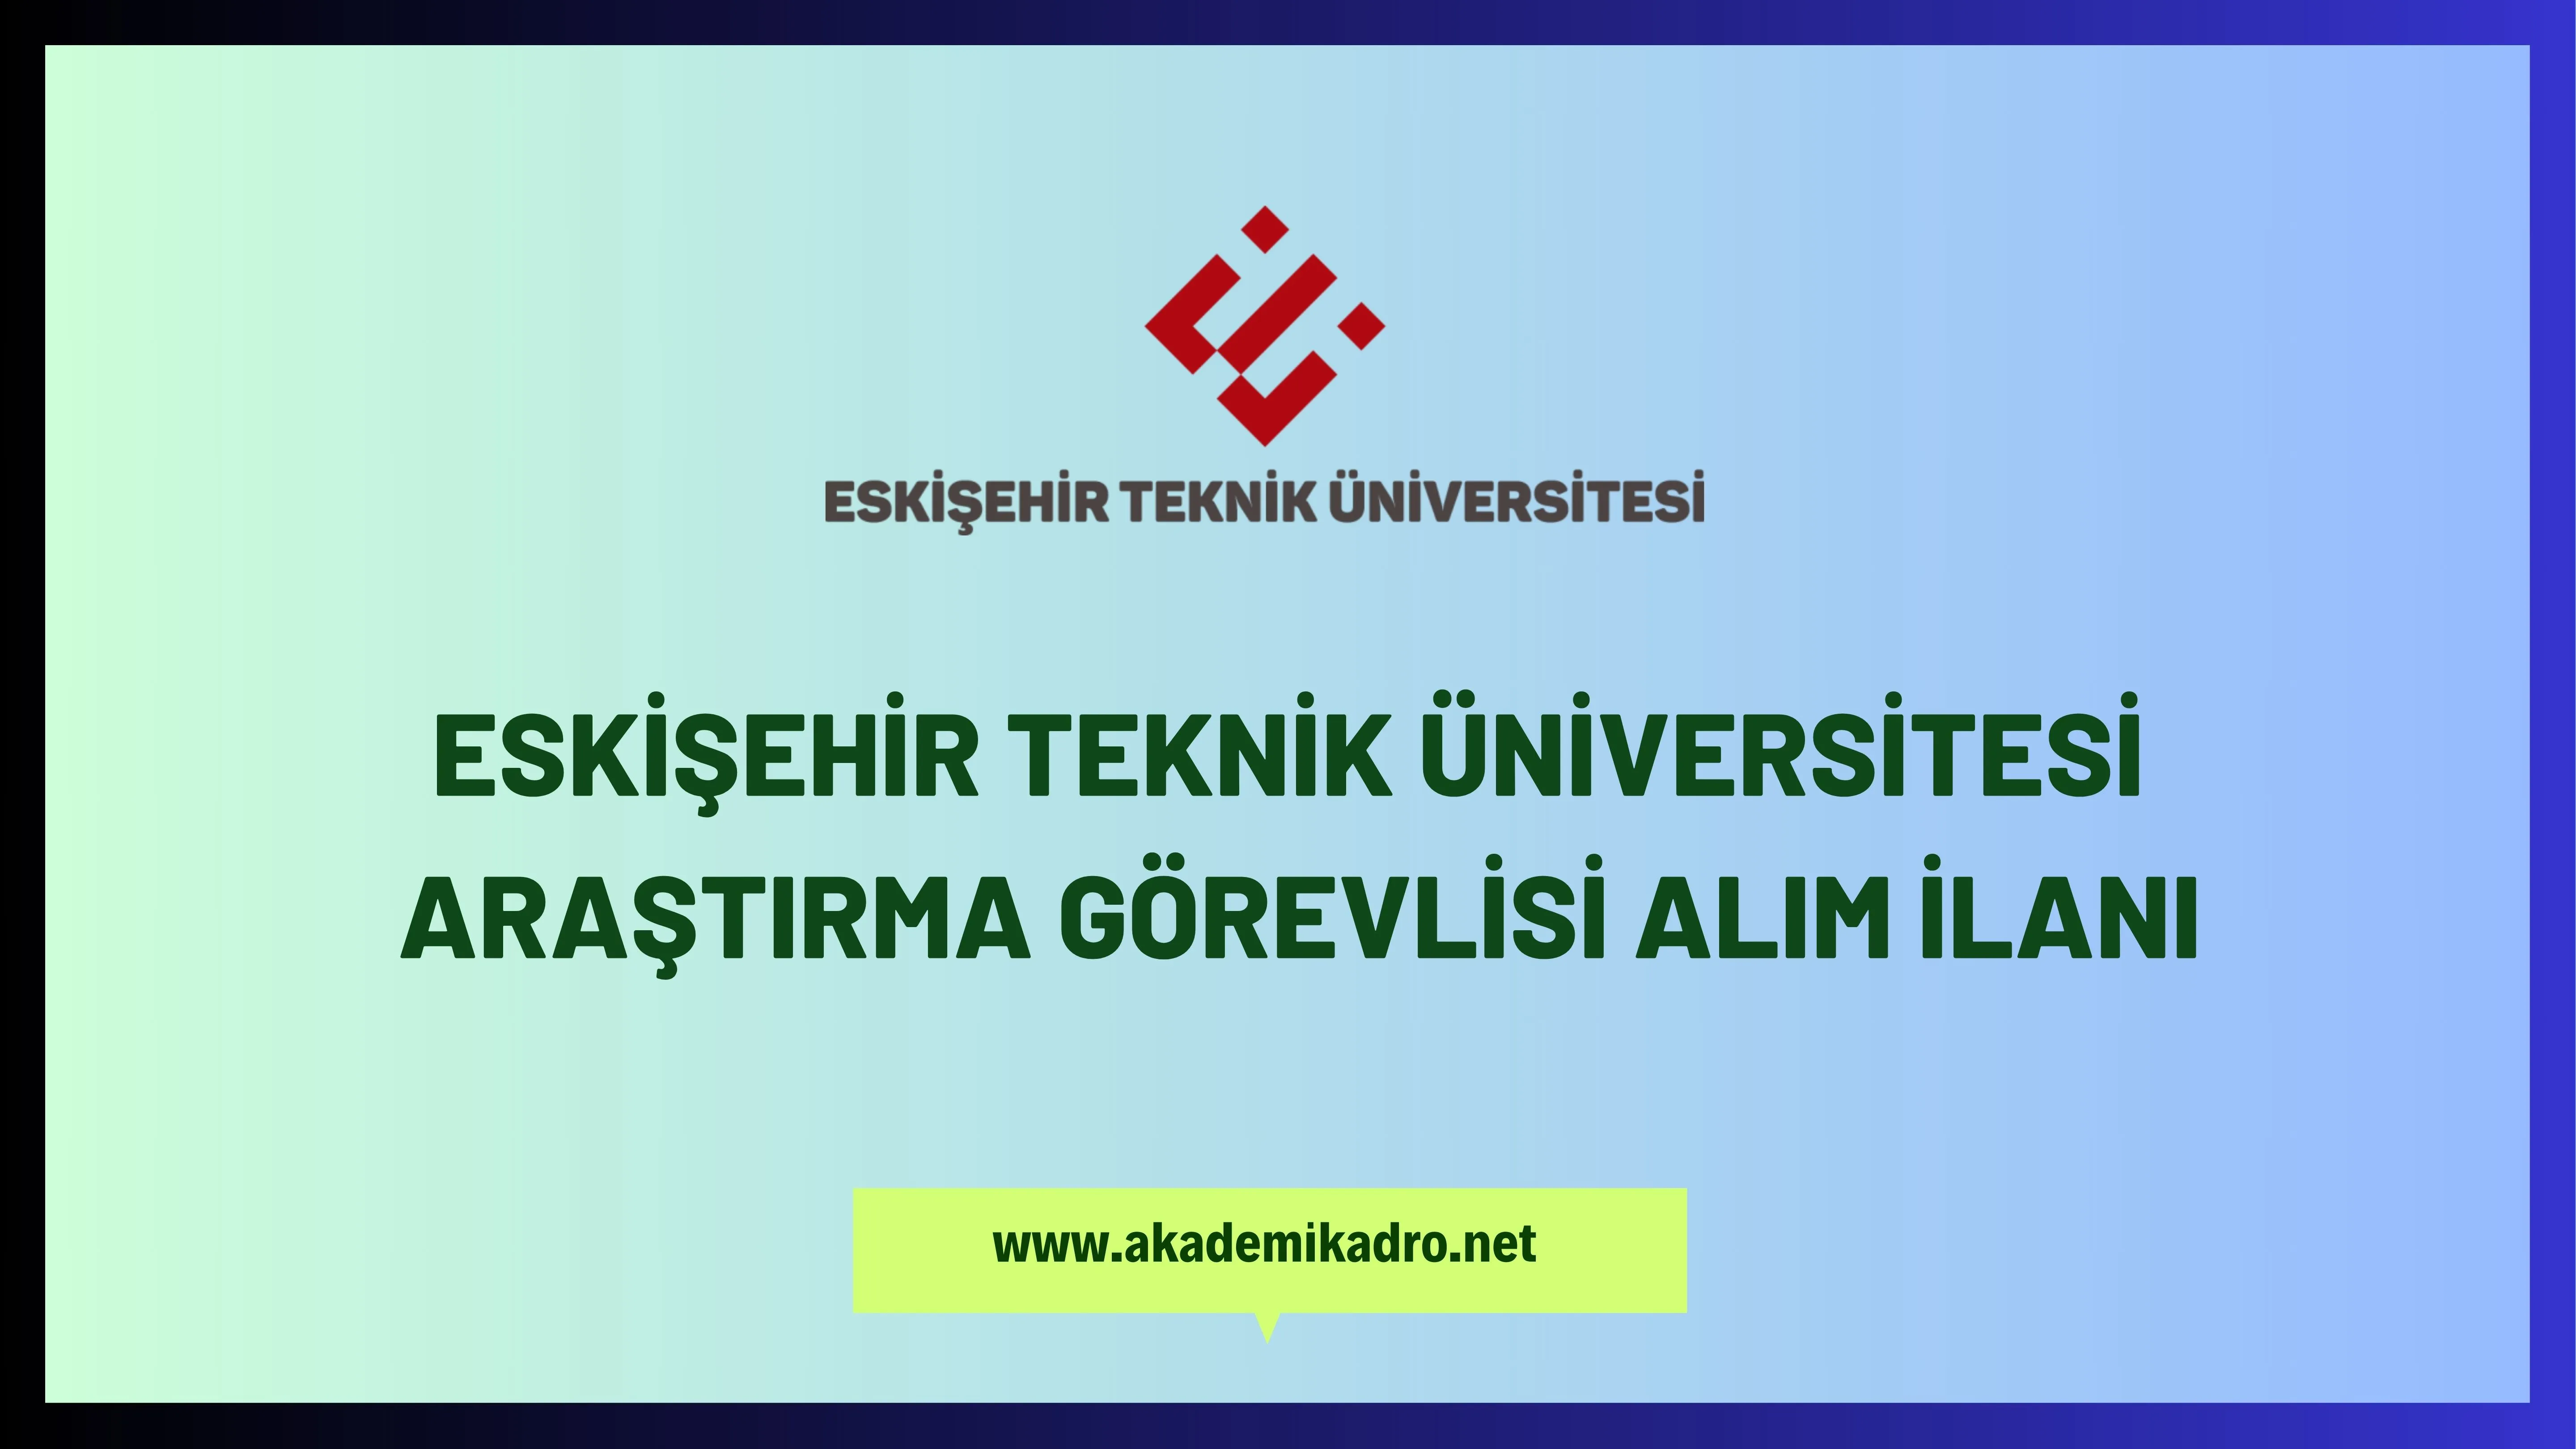 Eskişehir Teknik Üniversitesiçeşitli branşlarda 6 Araştırma görevlisi alacak.